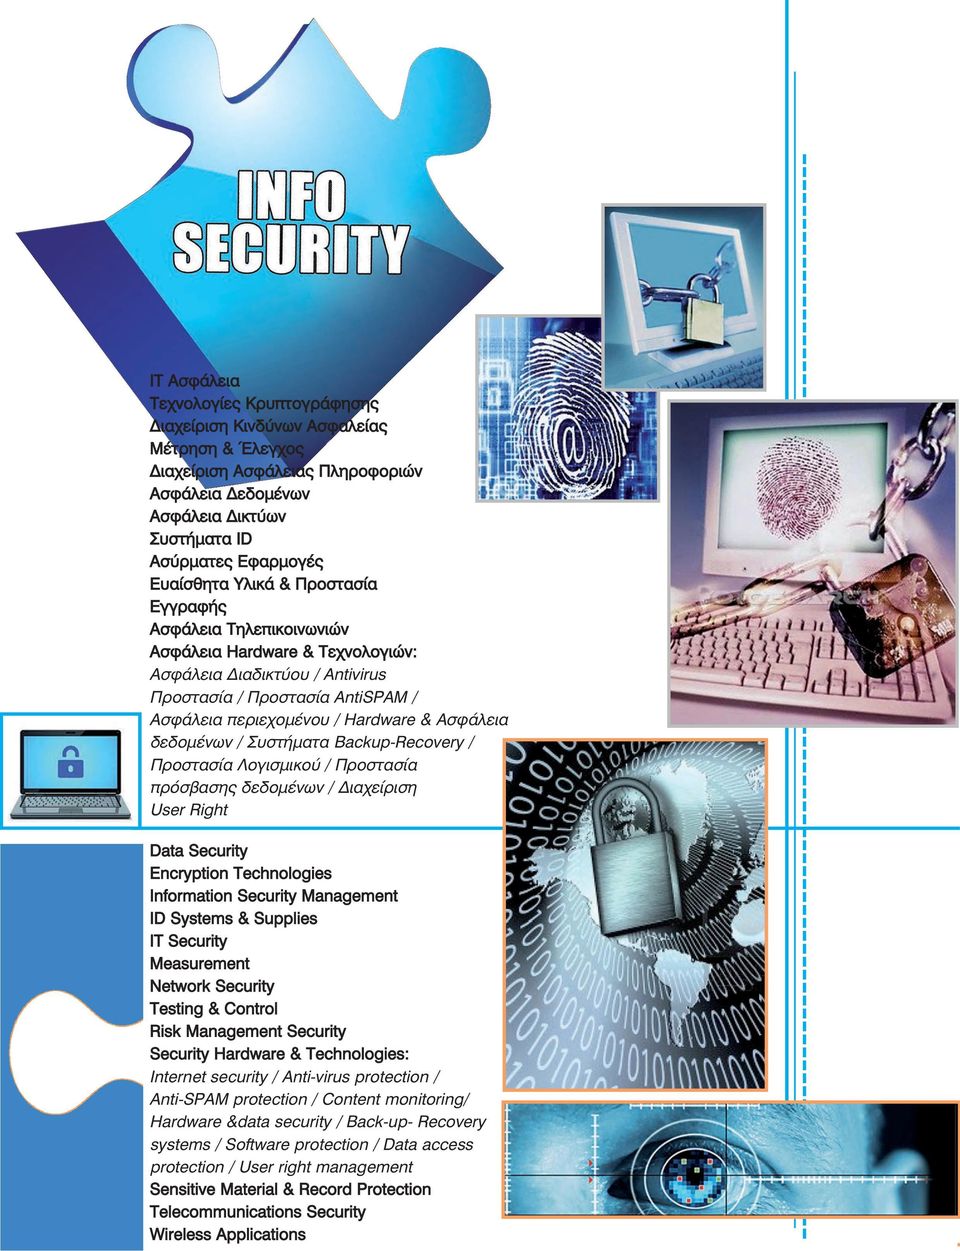 δεδομένων / Συστήματα Backup-Recovery / Προστασία Λογισμικού / Προστασία πρόσβασης δεδομένων / Διαχείριση User Right Data Security Encryption Technologies Information Security Management ID Systems &